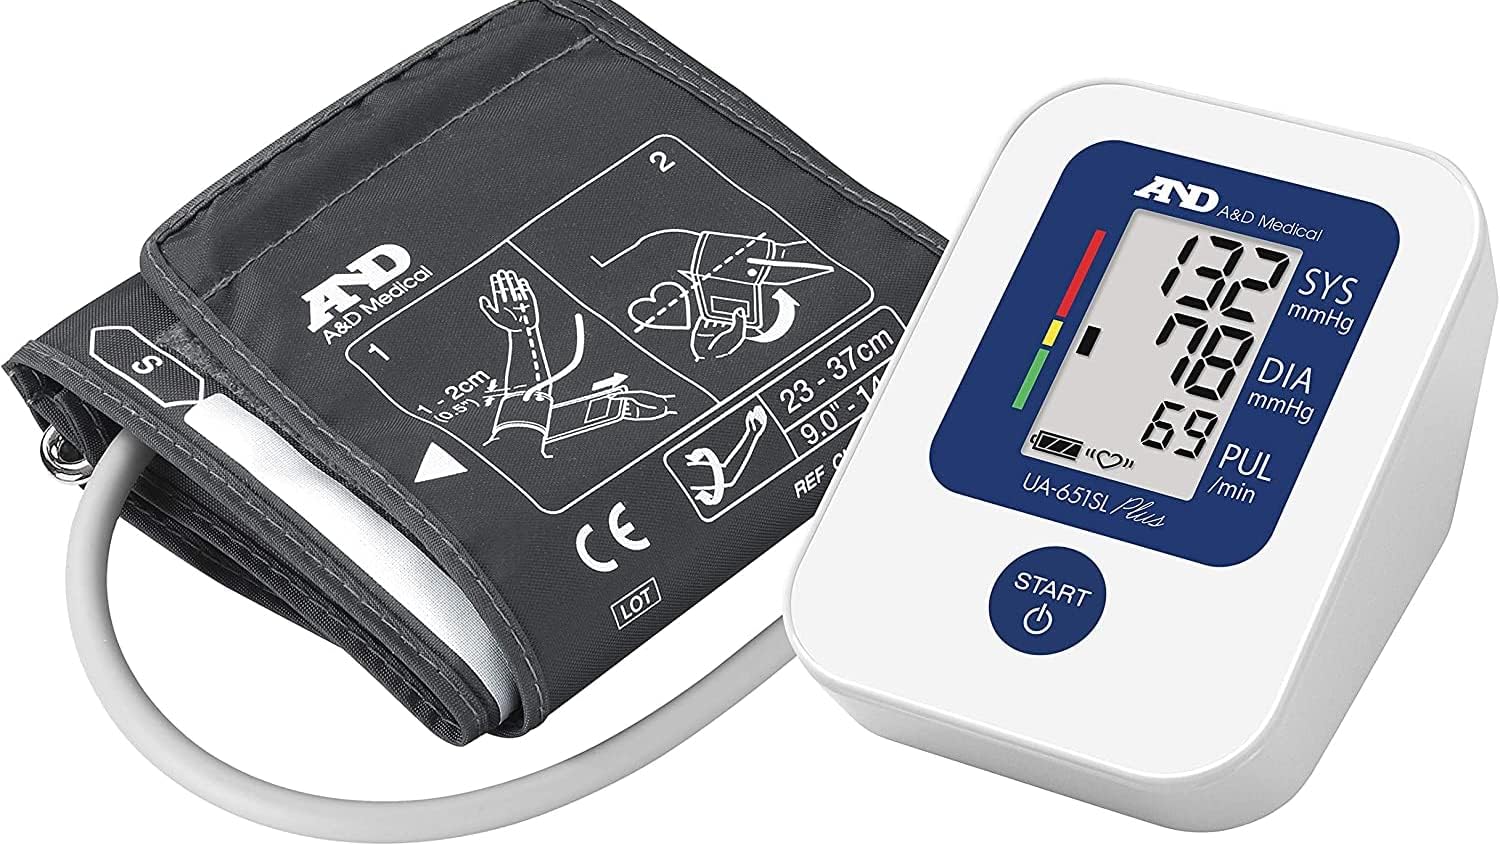 A&D Medical UA-651SL Plus Blutdruckmessgerät mit AFib Screening